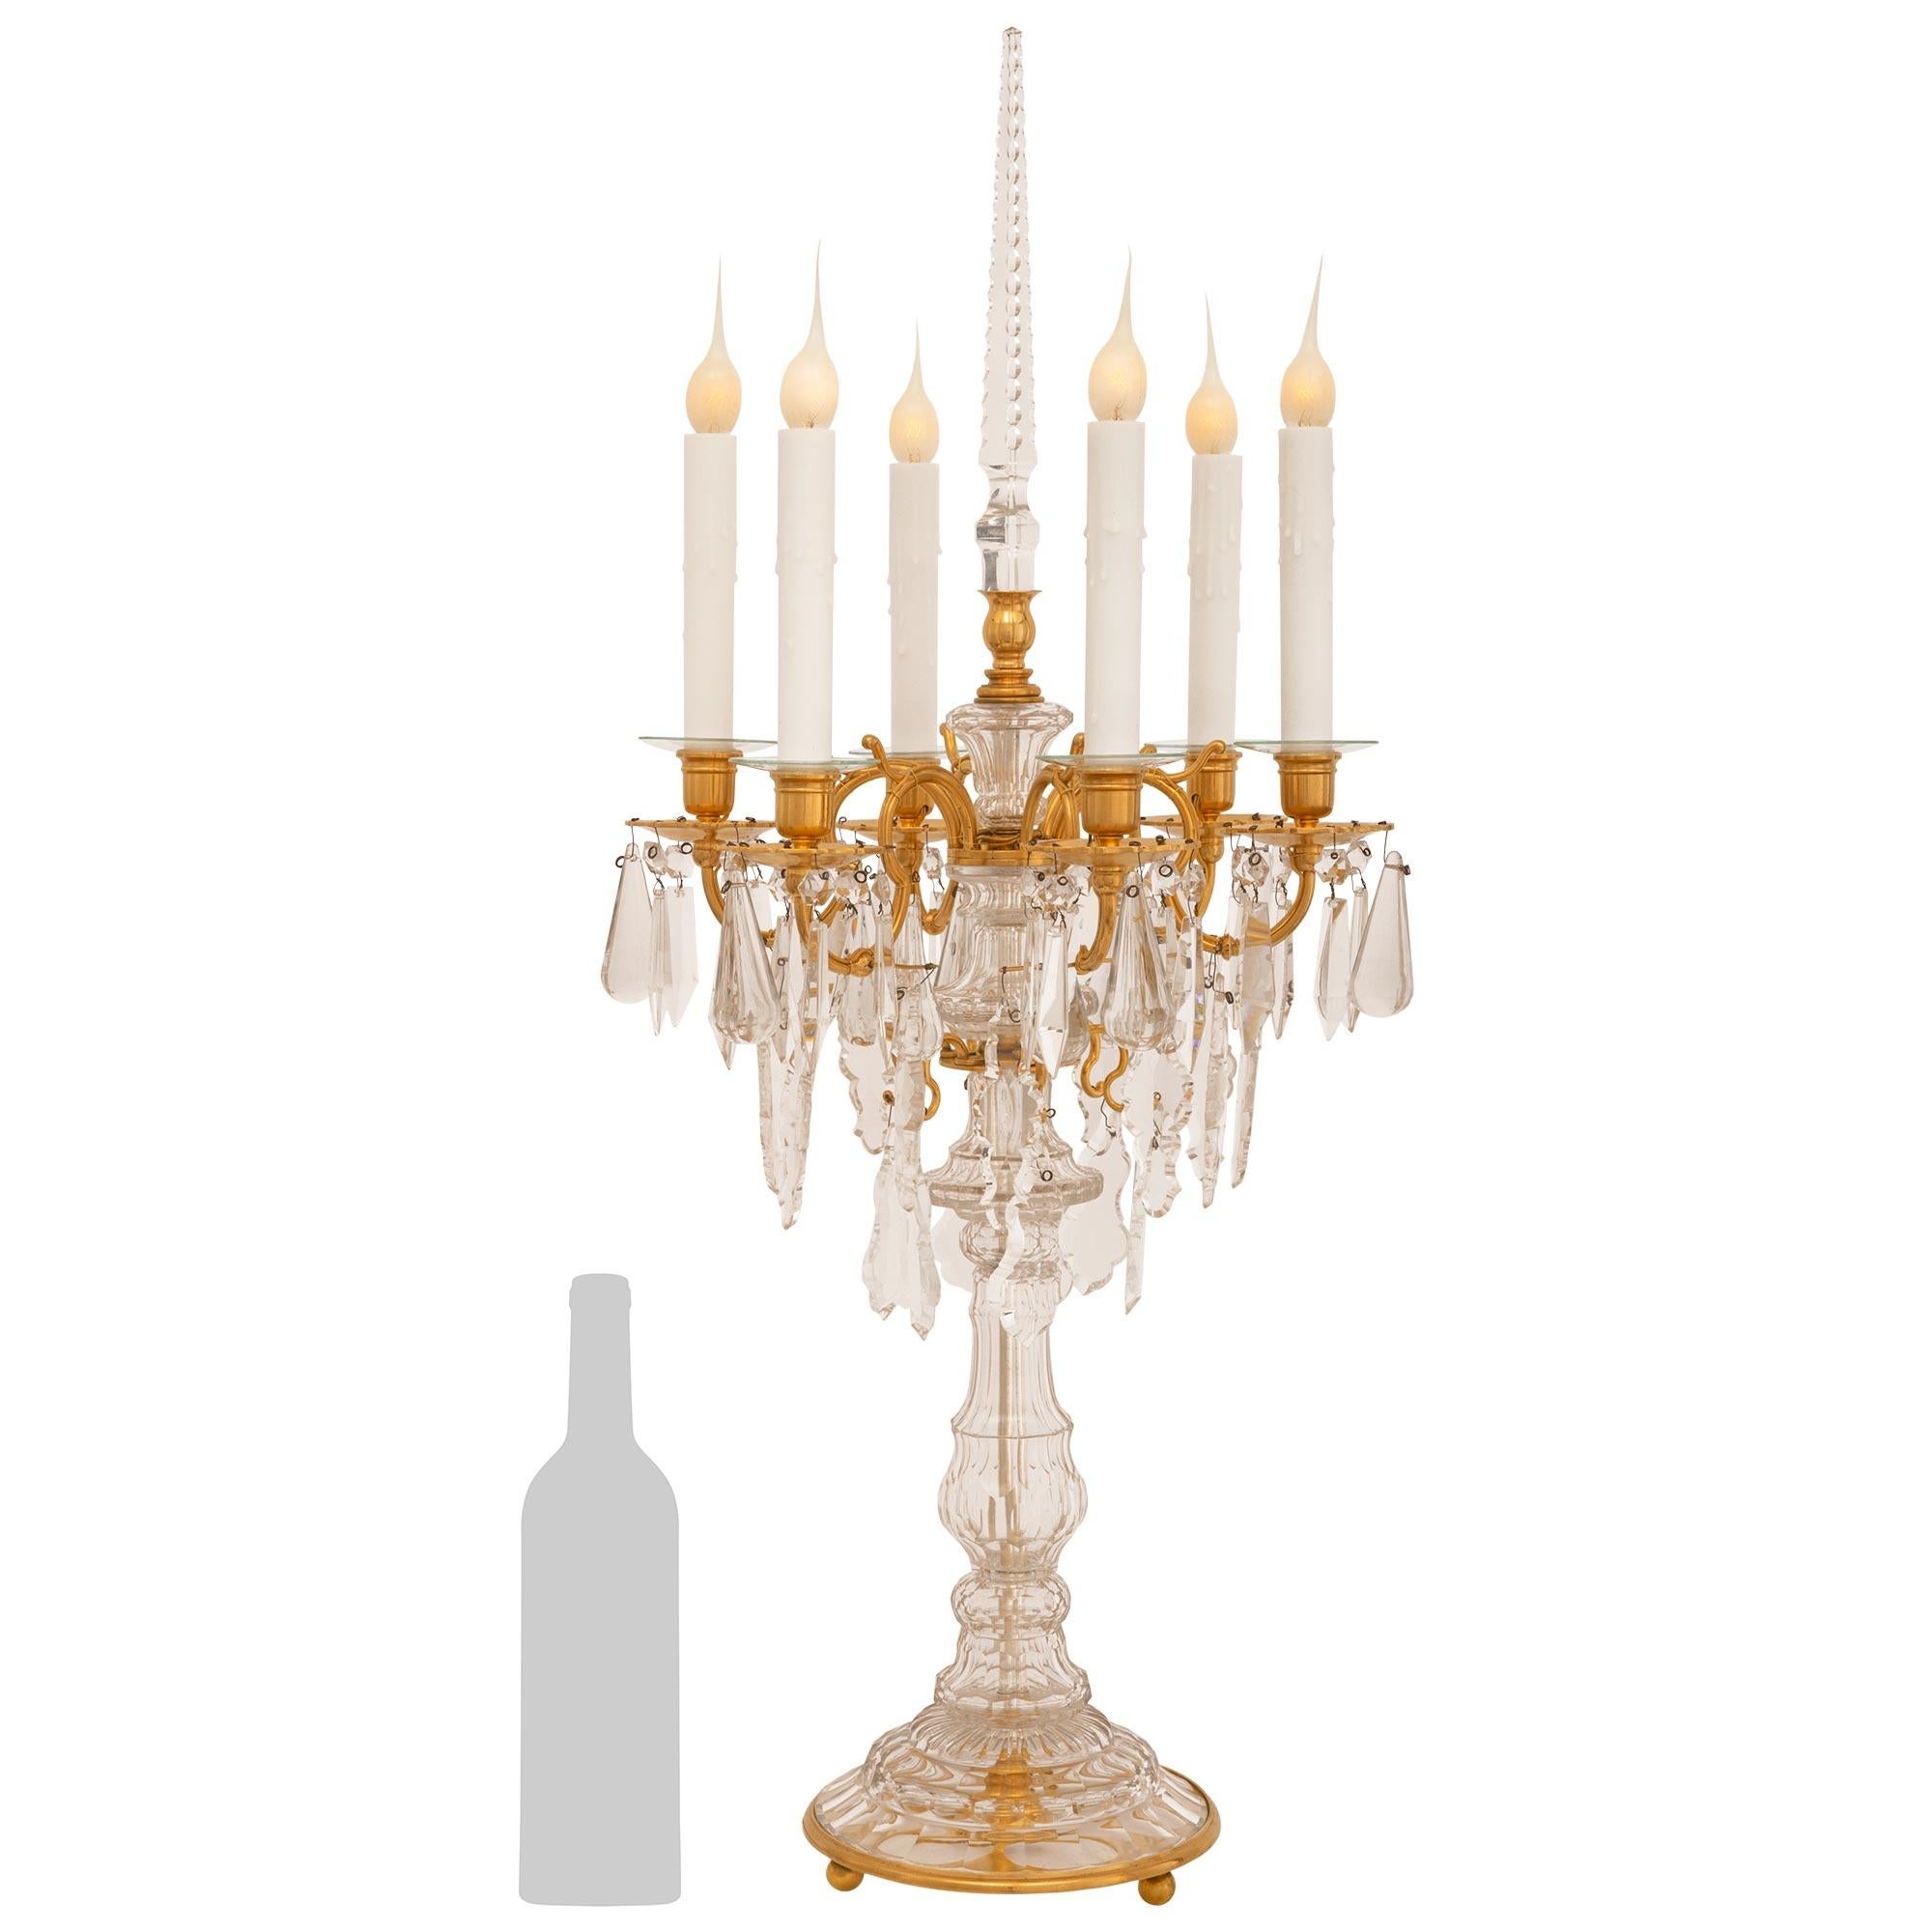 Une belle et impressionnante paire de lampes candélabres en bronze doré et cristal de style Louis XVI du 19ème siècle. Chaque candélabre électrifié à six bras est monté sur une élégante base circulaire en bronze doré et en cristal, avec de fins